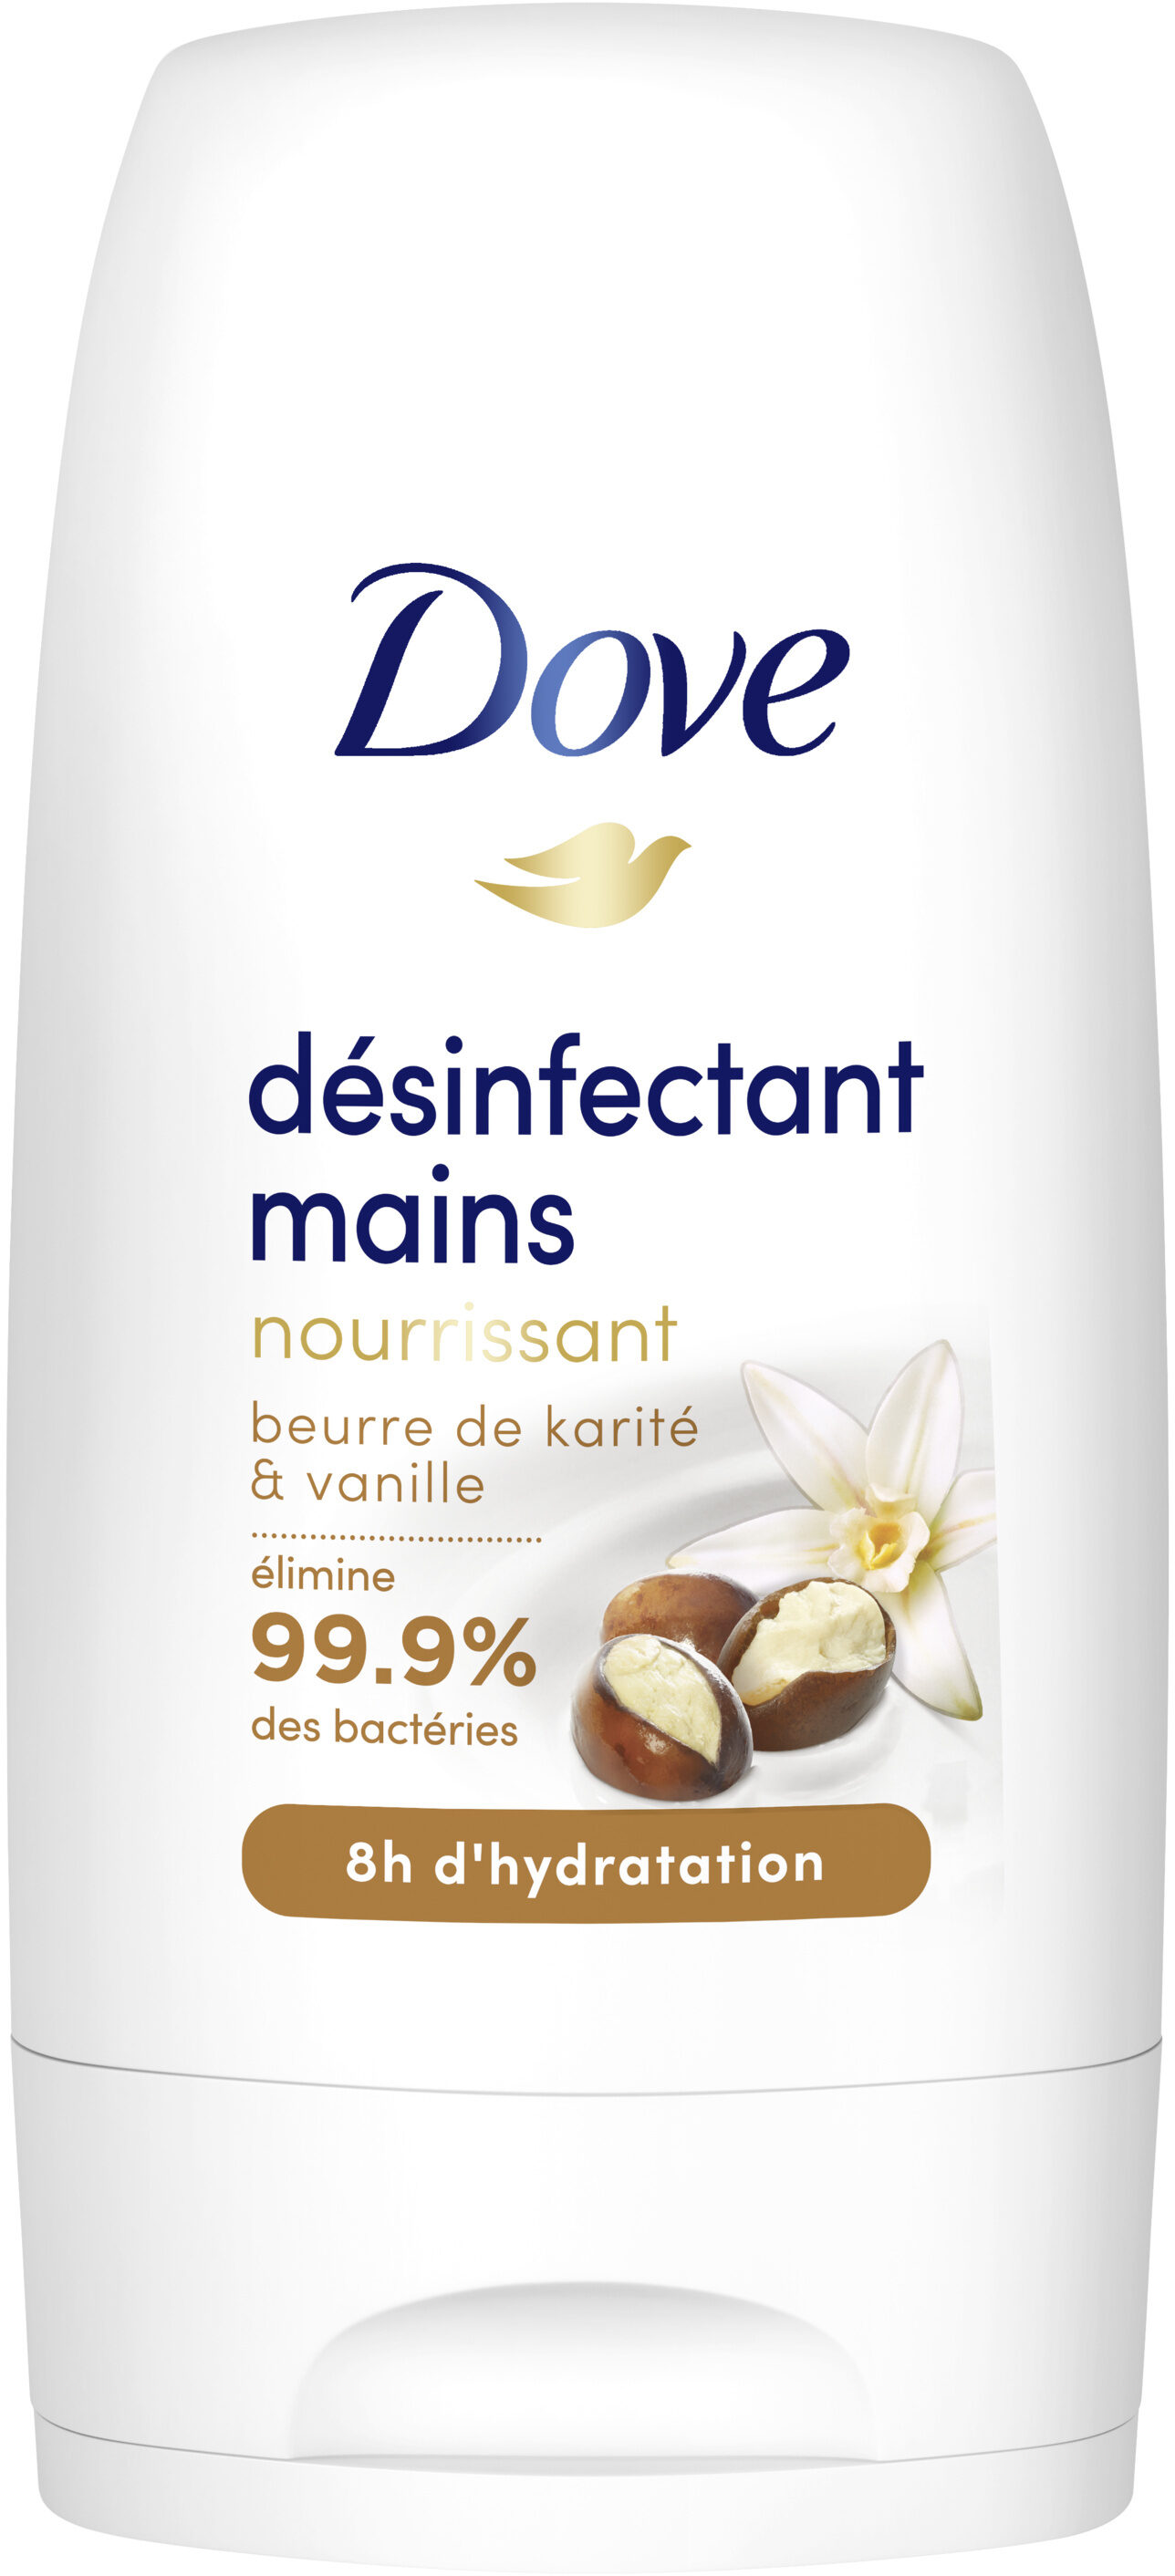 Dove Désinfectant Mains Nourrissant Beurre de Karité & Vanille 50ml - Product - fr